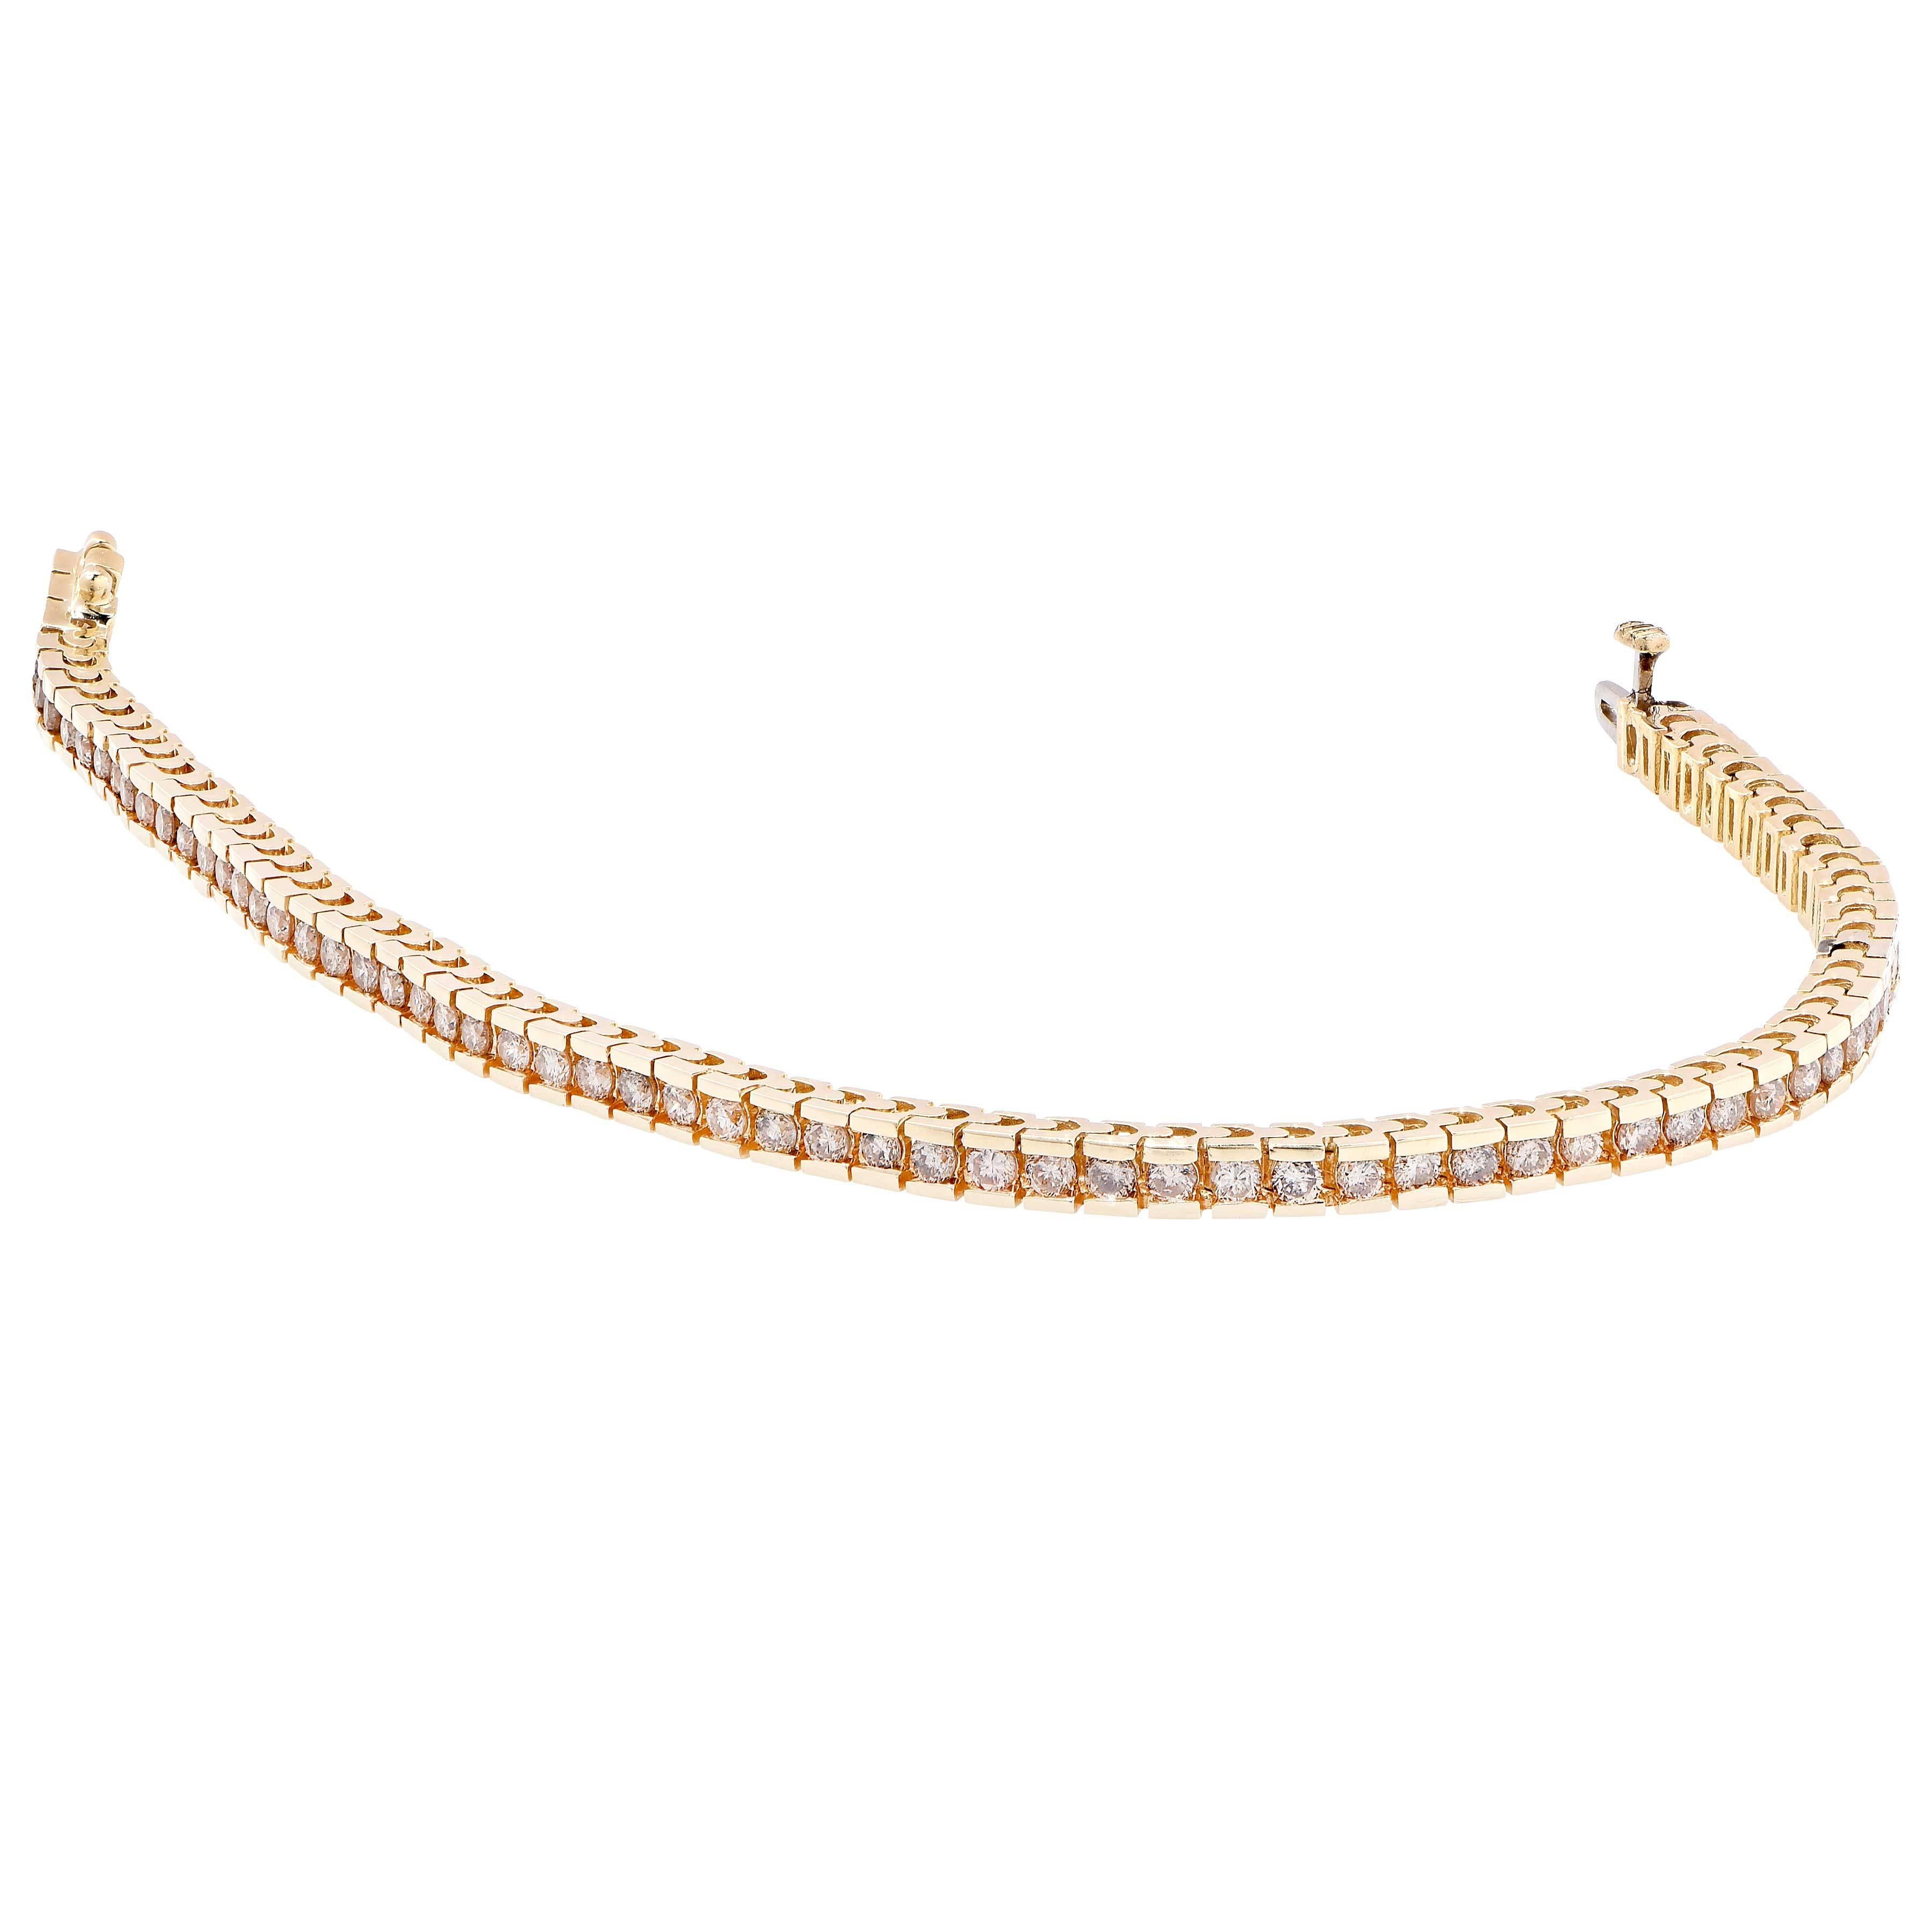 Ce bracelet moderne en diamants sertis en canal comprend 70 diamants ronds de taille brillant sertis en canal, pour un poids total estimé à 2,8 carats. 

Type de métal : or jaune 14 Kt